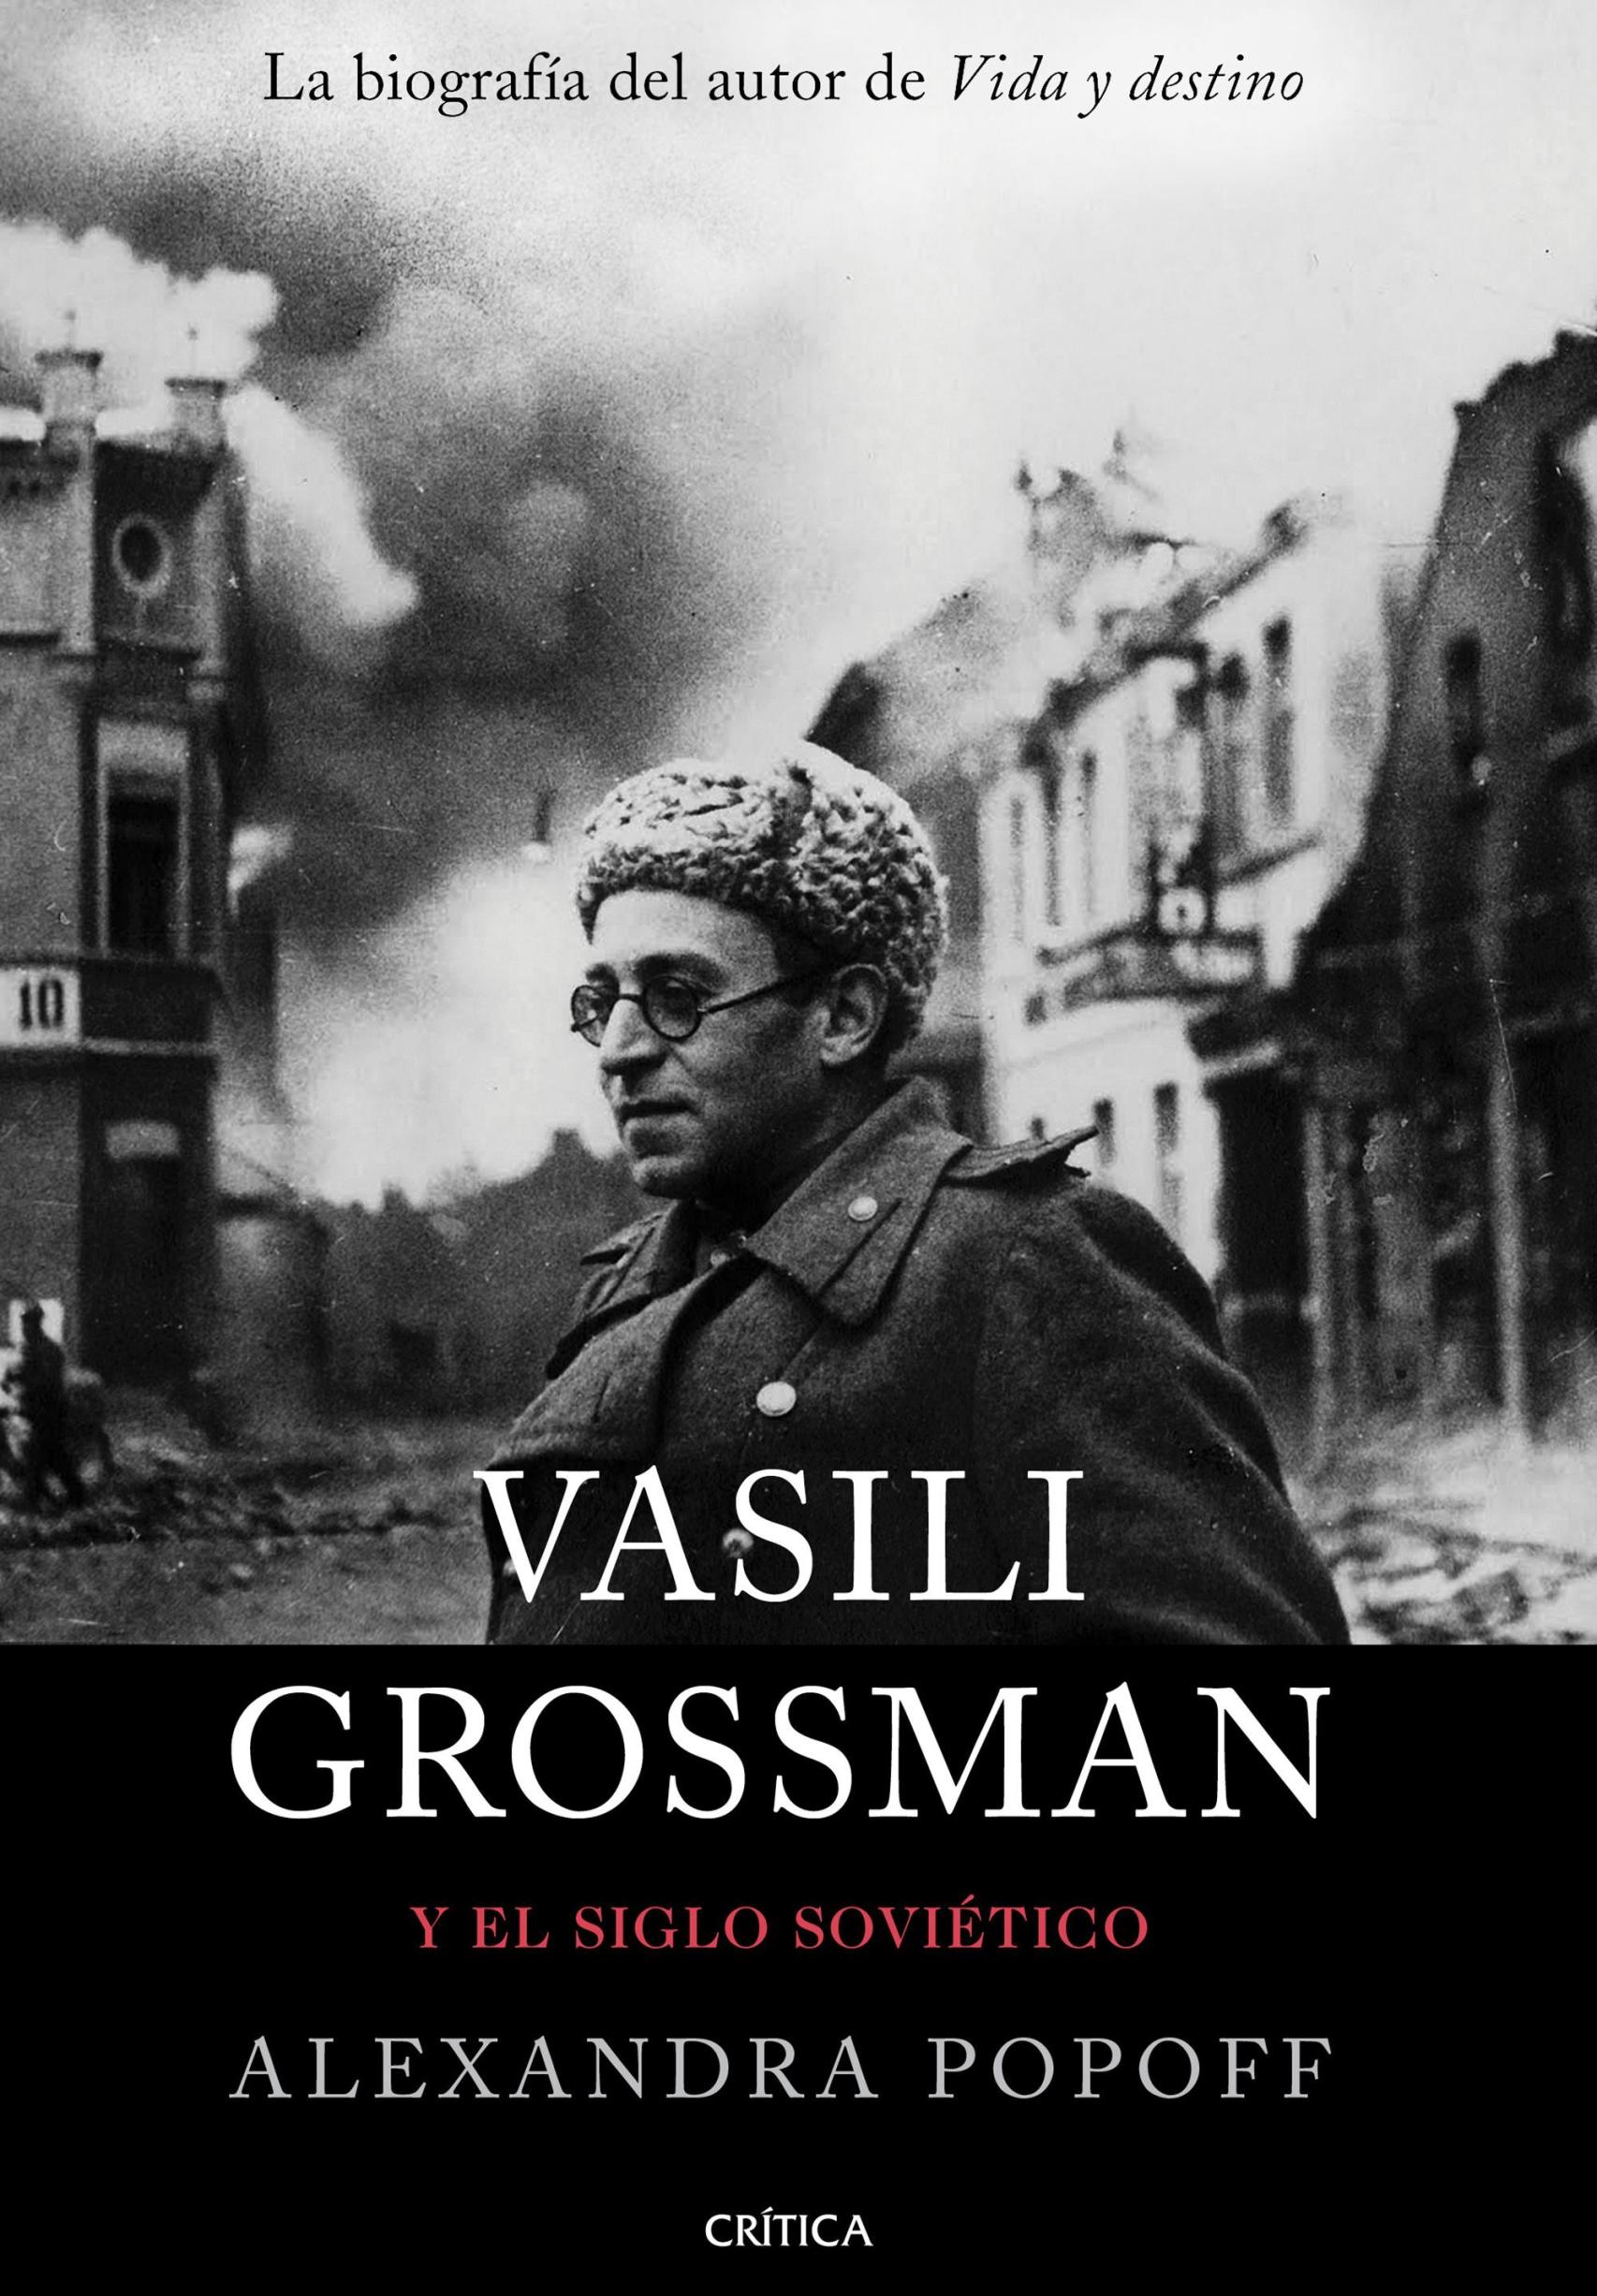 Portada de 'Vasili Grossman y el siglo soviético' (Crítica).